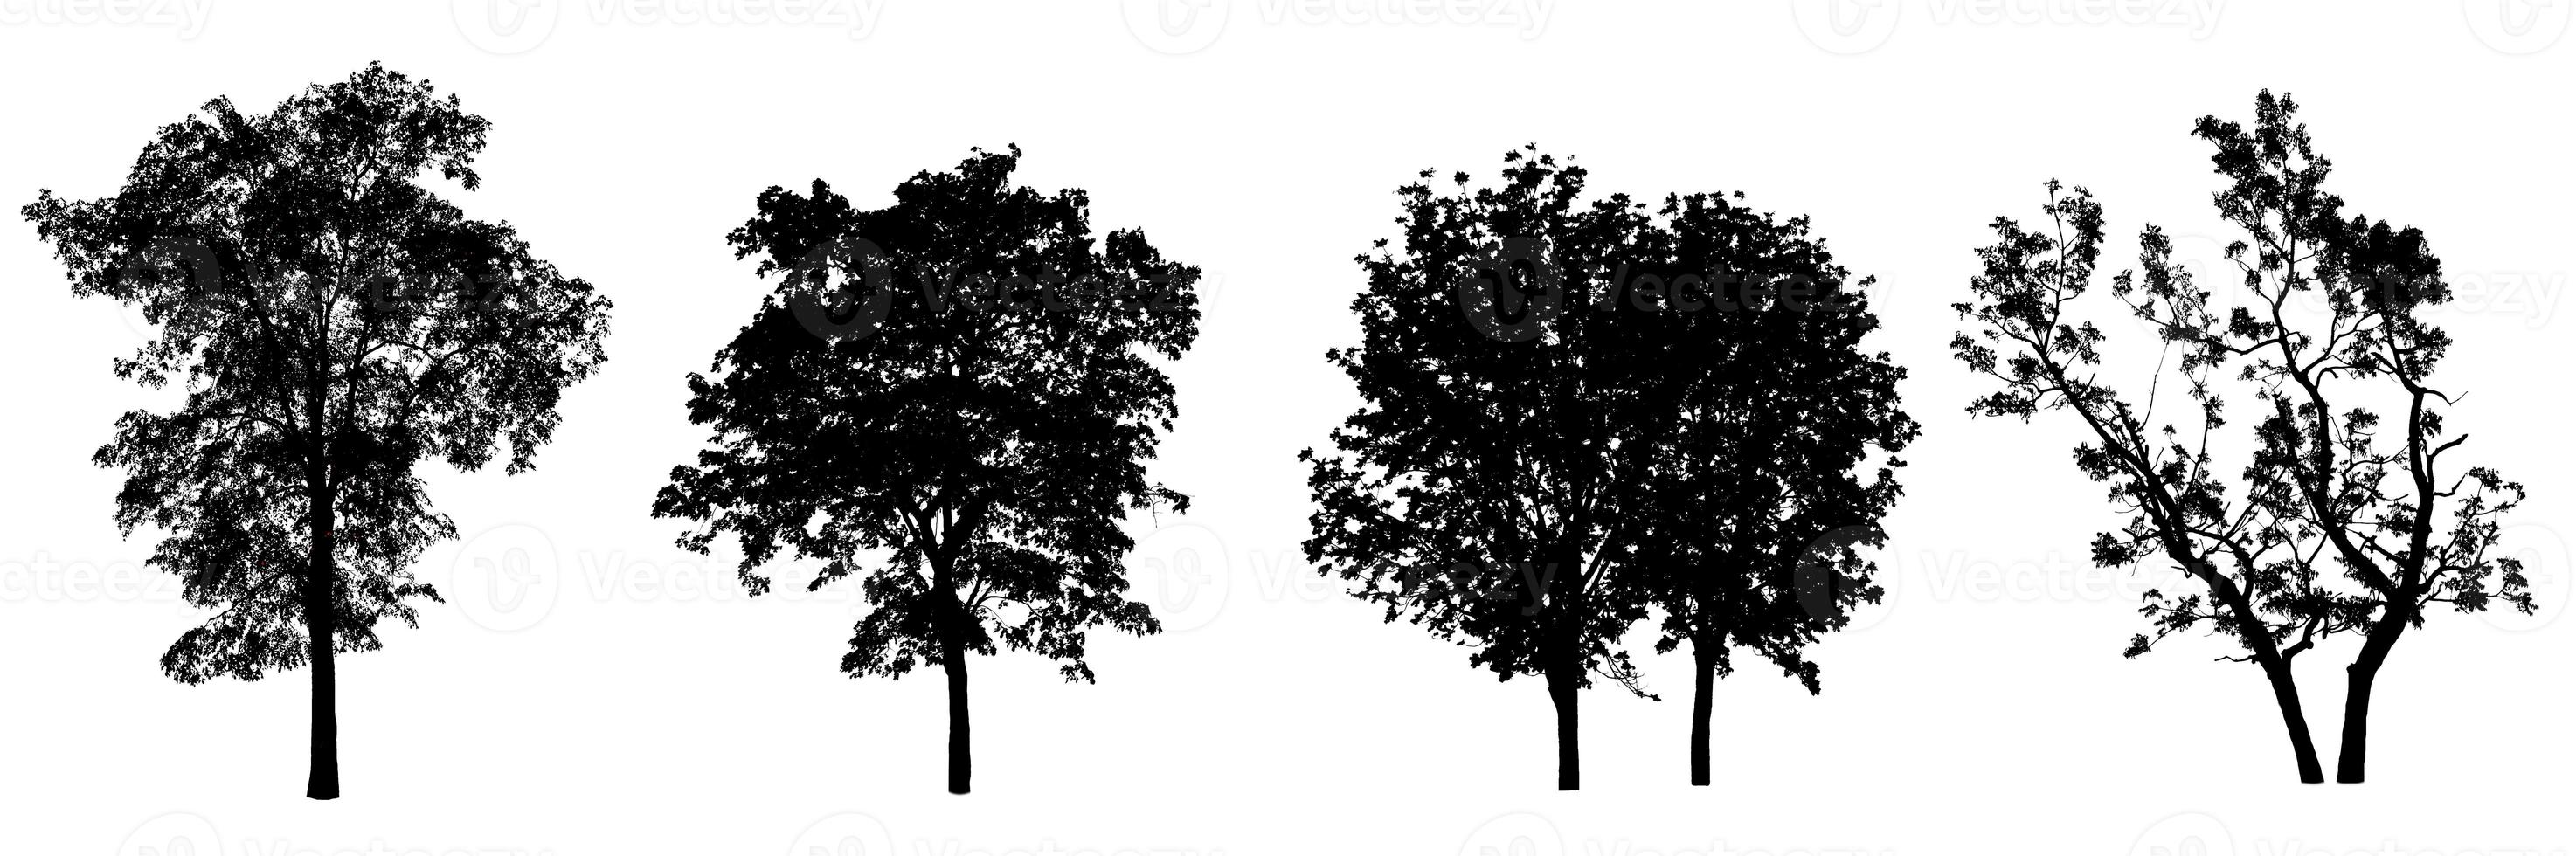 uppsättning av träd silhuett för borsta på vit bakgrund foto